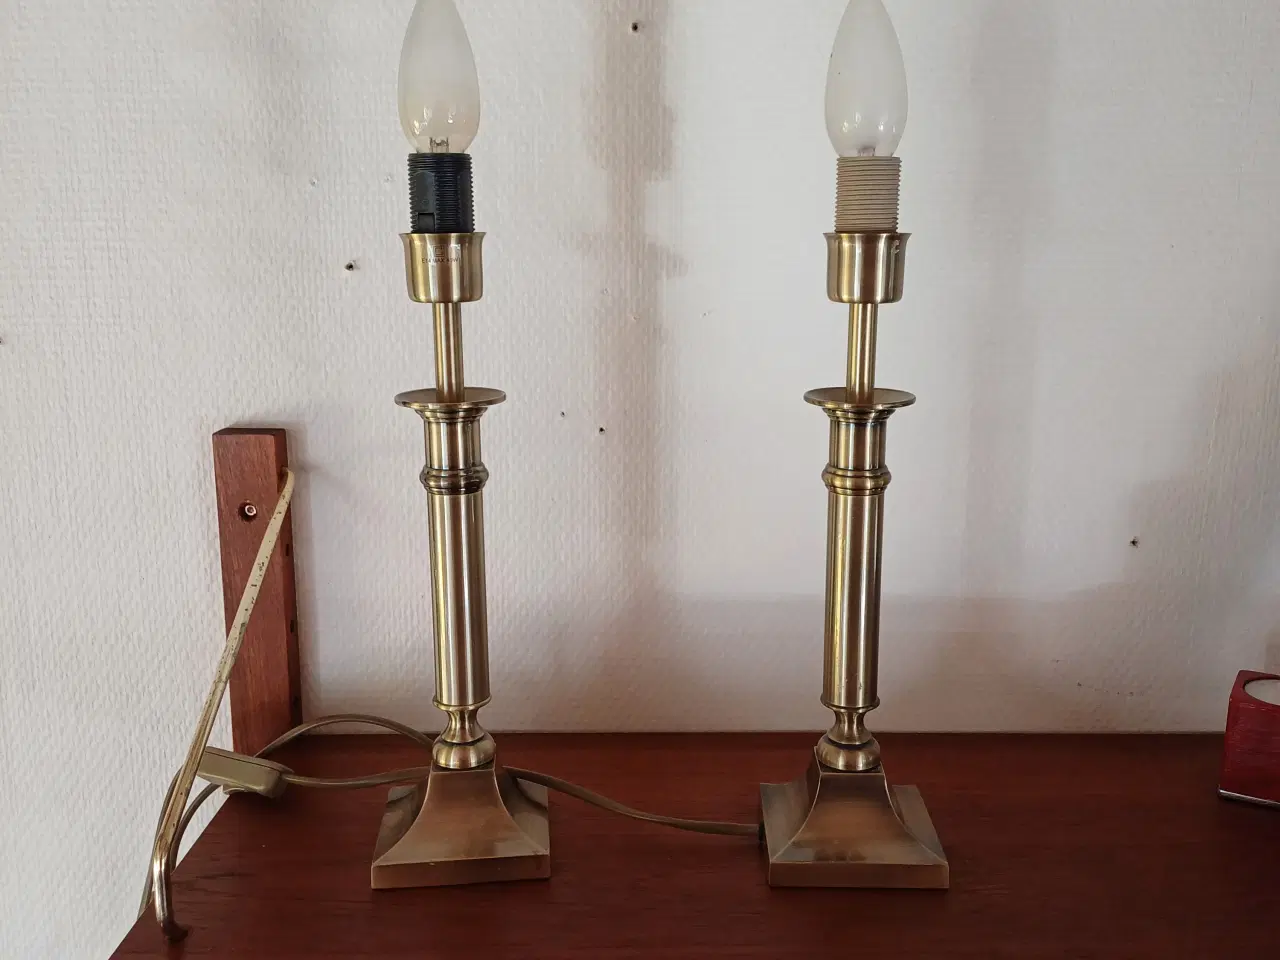 Billede 4 - To flotte lamper fra lamp gustaf ab